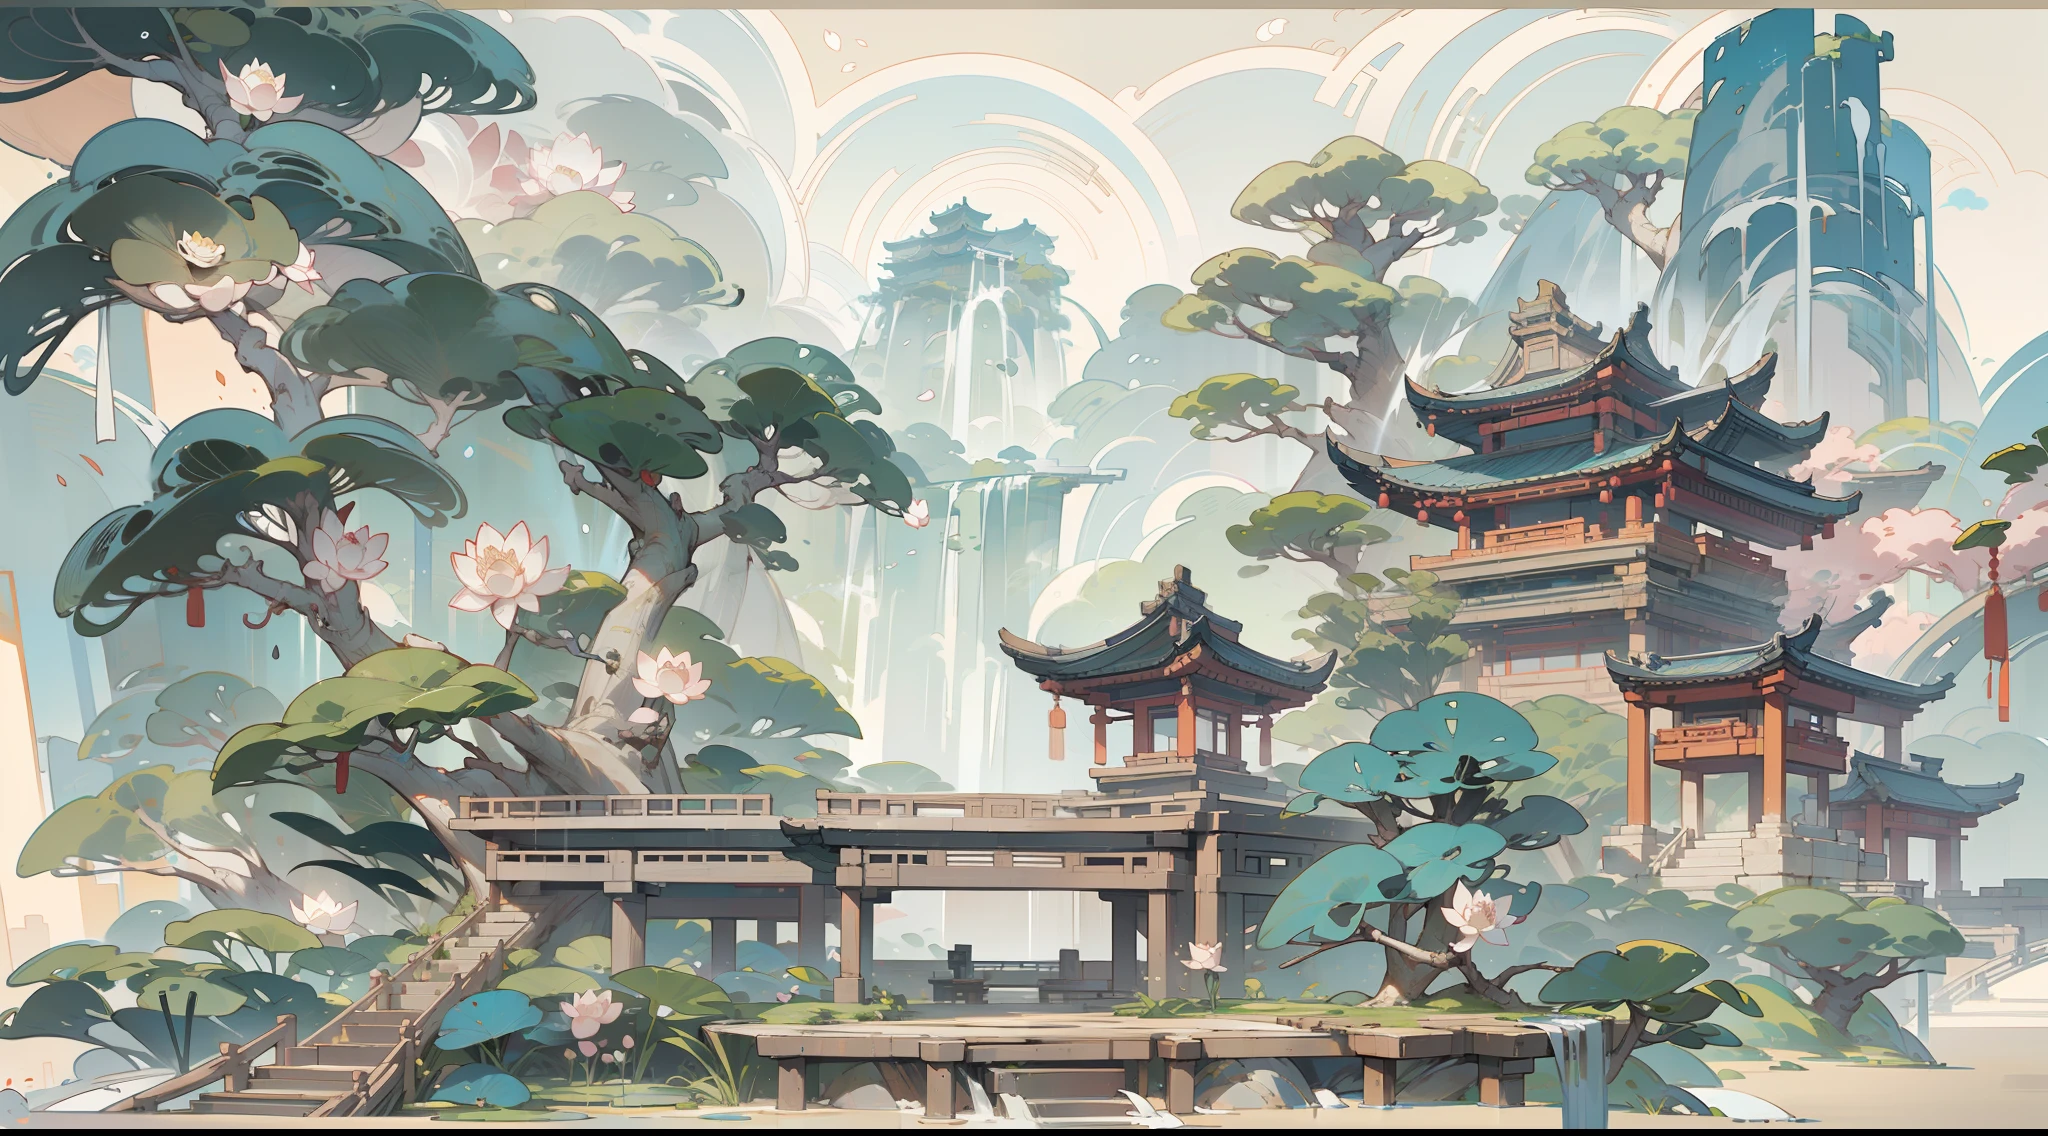 仿古遊戲場景設計，大樹，花香，蓮花建築，浮動桌子，藍天，白雲，中國水墨OC渲染雕塑